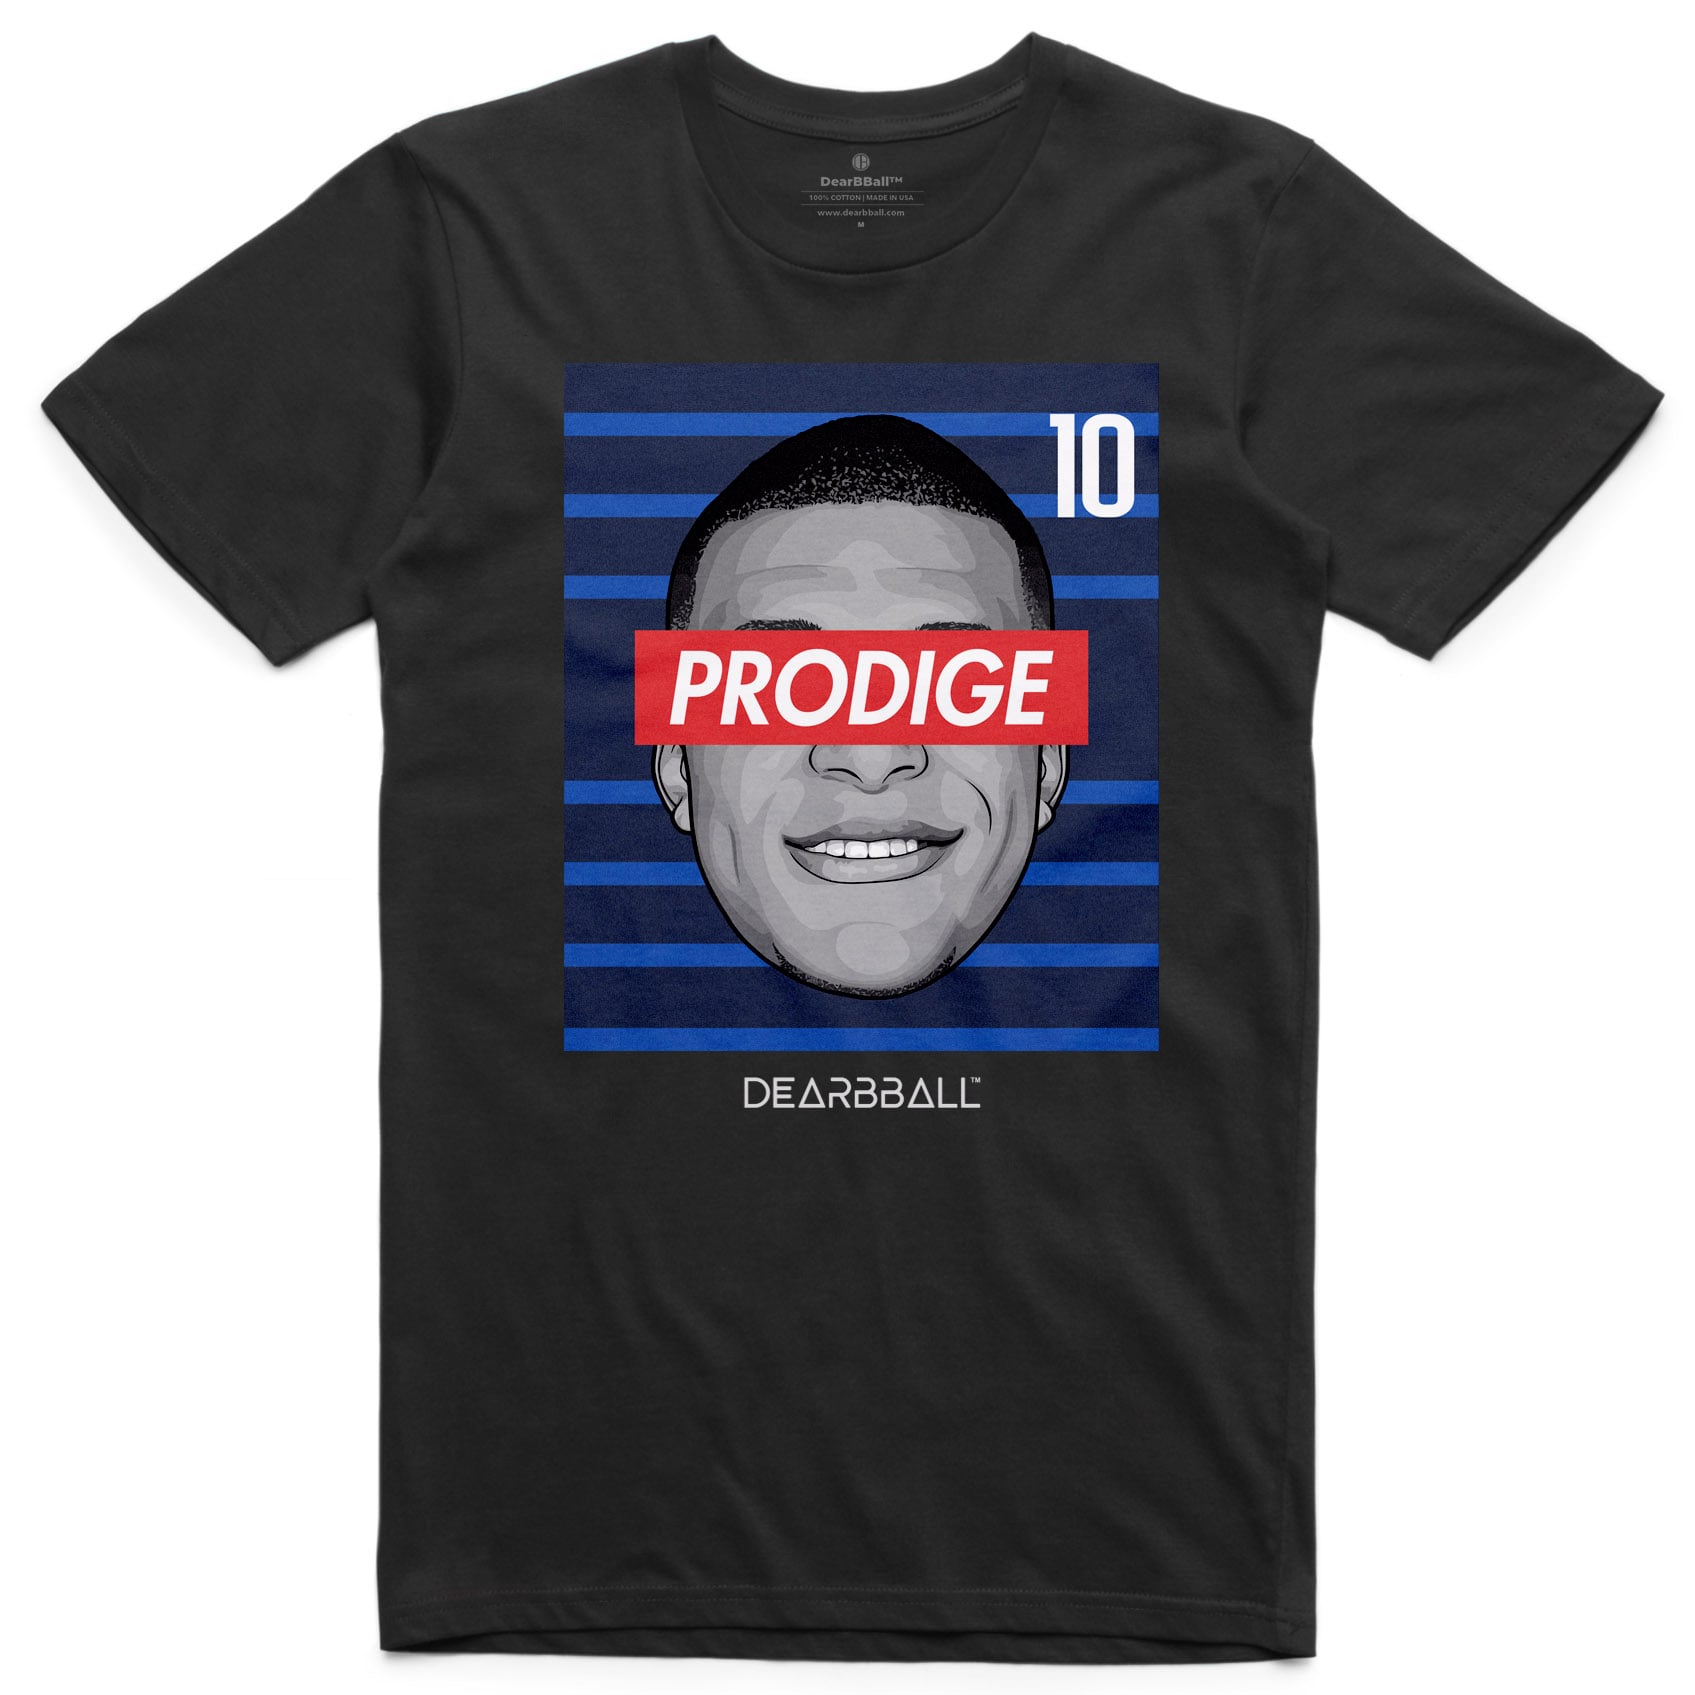 DearBBall T-Shirt - PRODIGE 10 France